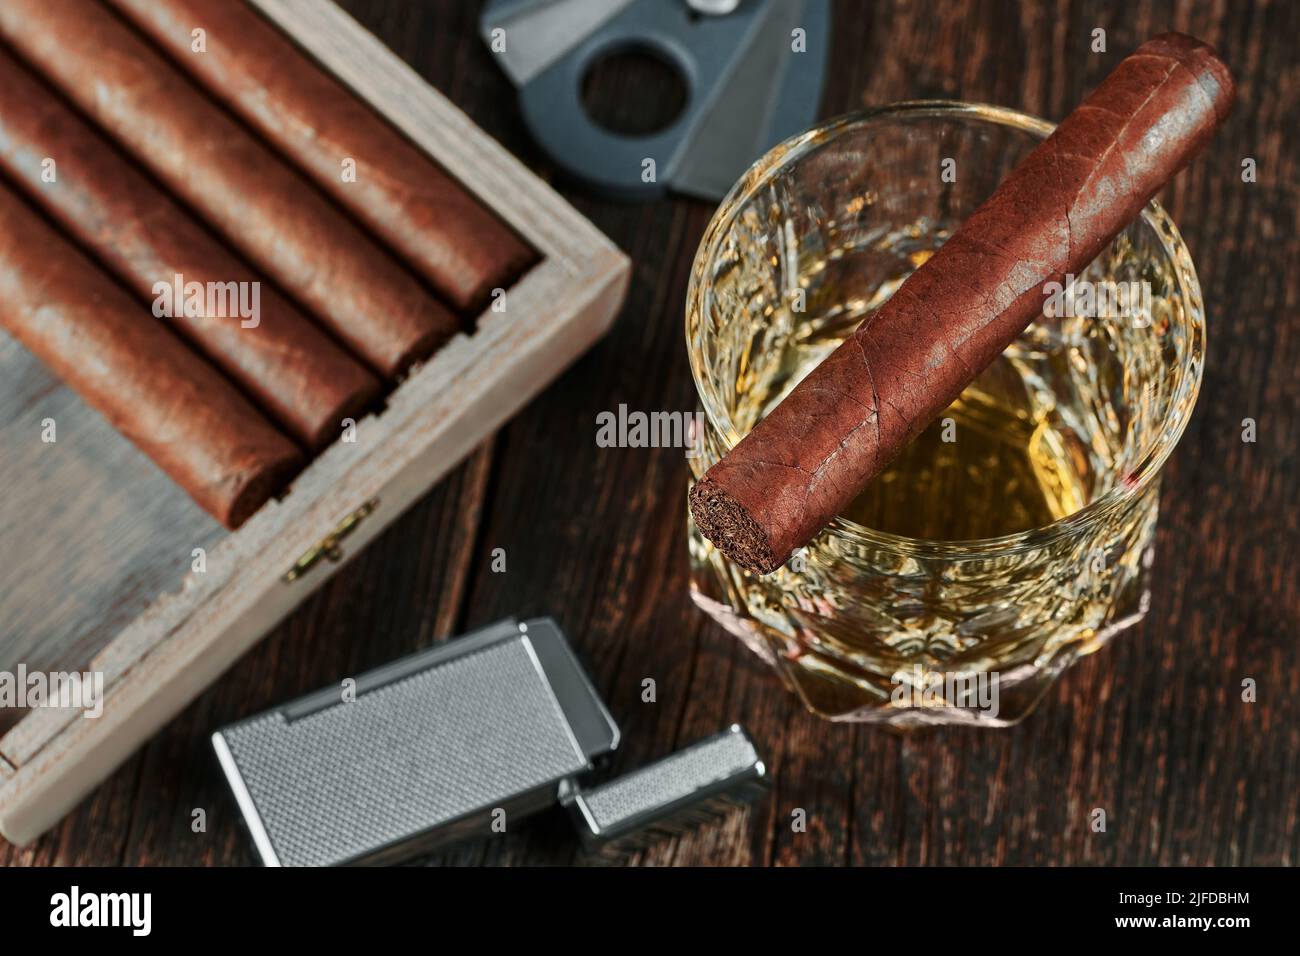 Blick von oben auf eine kubanische Zigarre auf einem Glas Whiskey oder Alkohol. Holztisch, Feuerzeug und Cutter mit unscharfem Hintergrund. Stockfoto